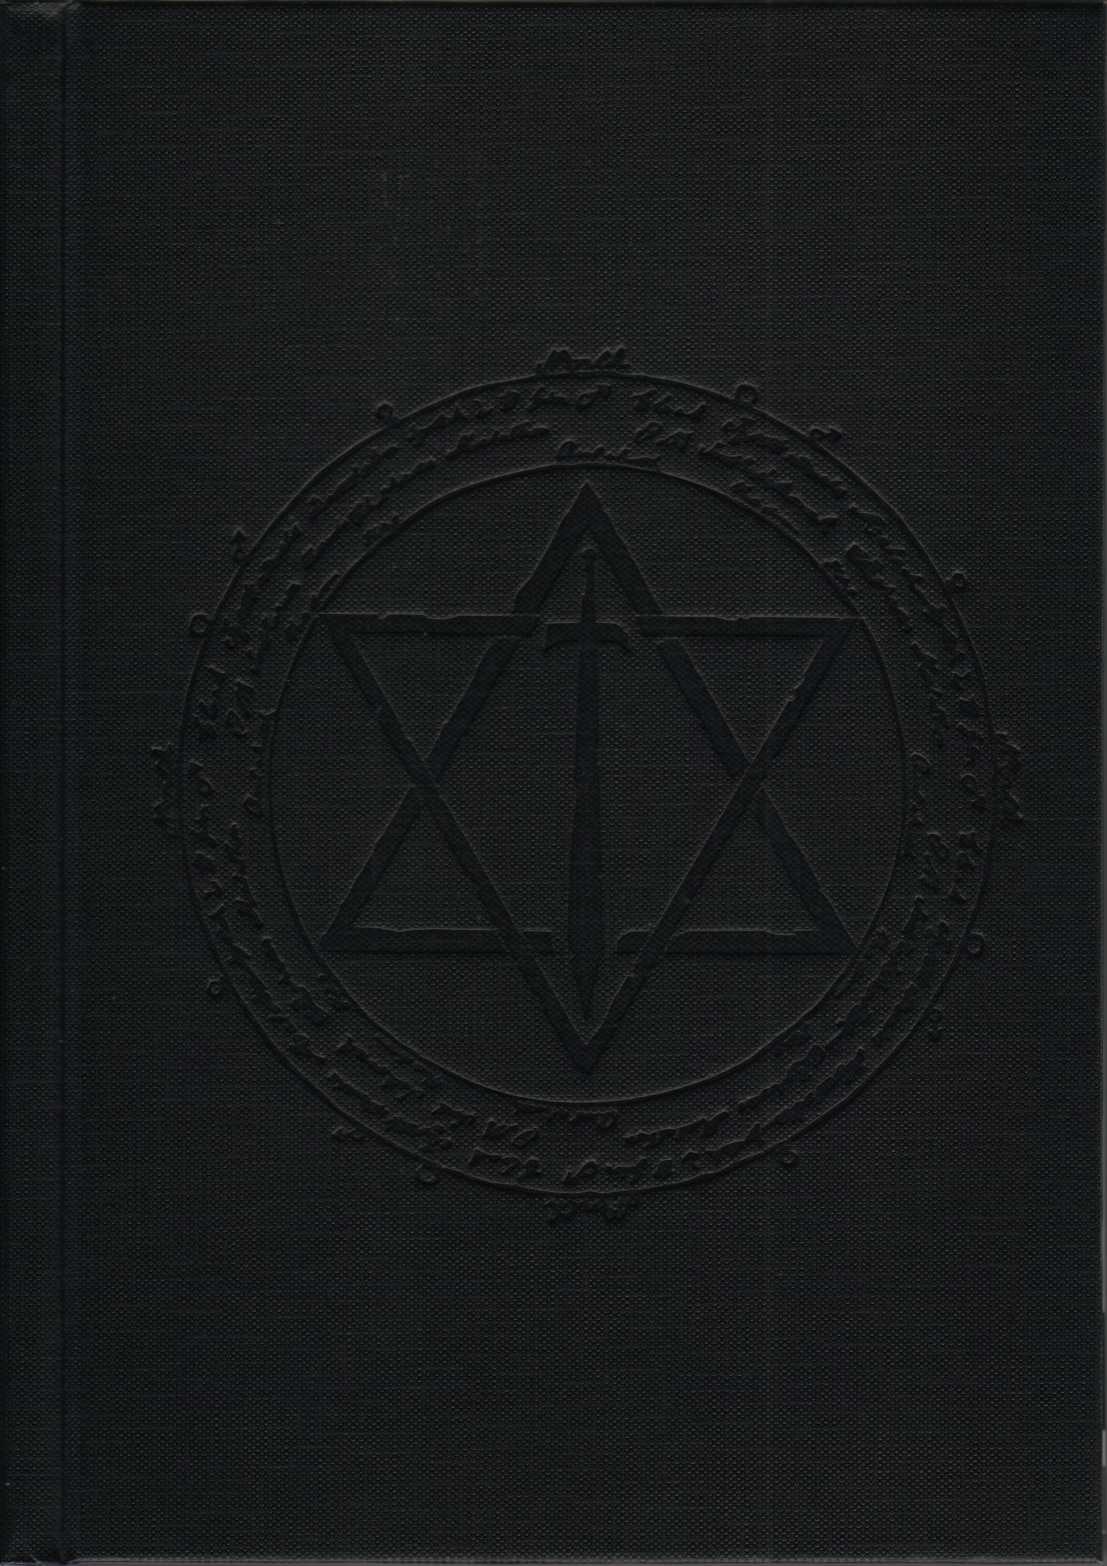 Bible Black Box Set (Artbook) 